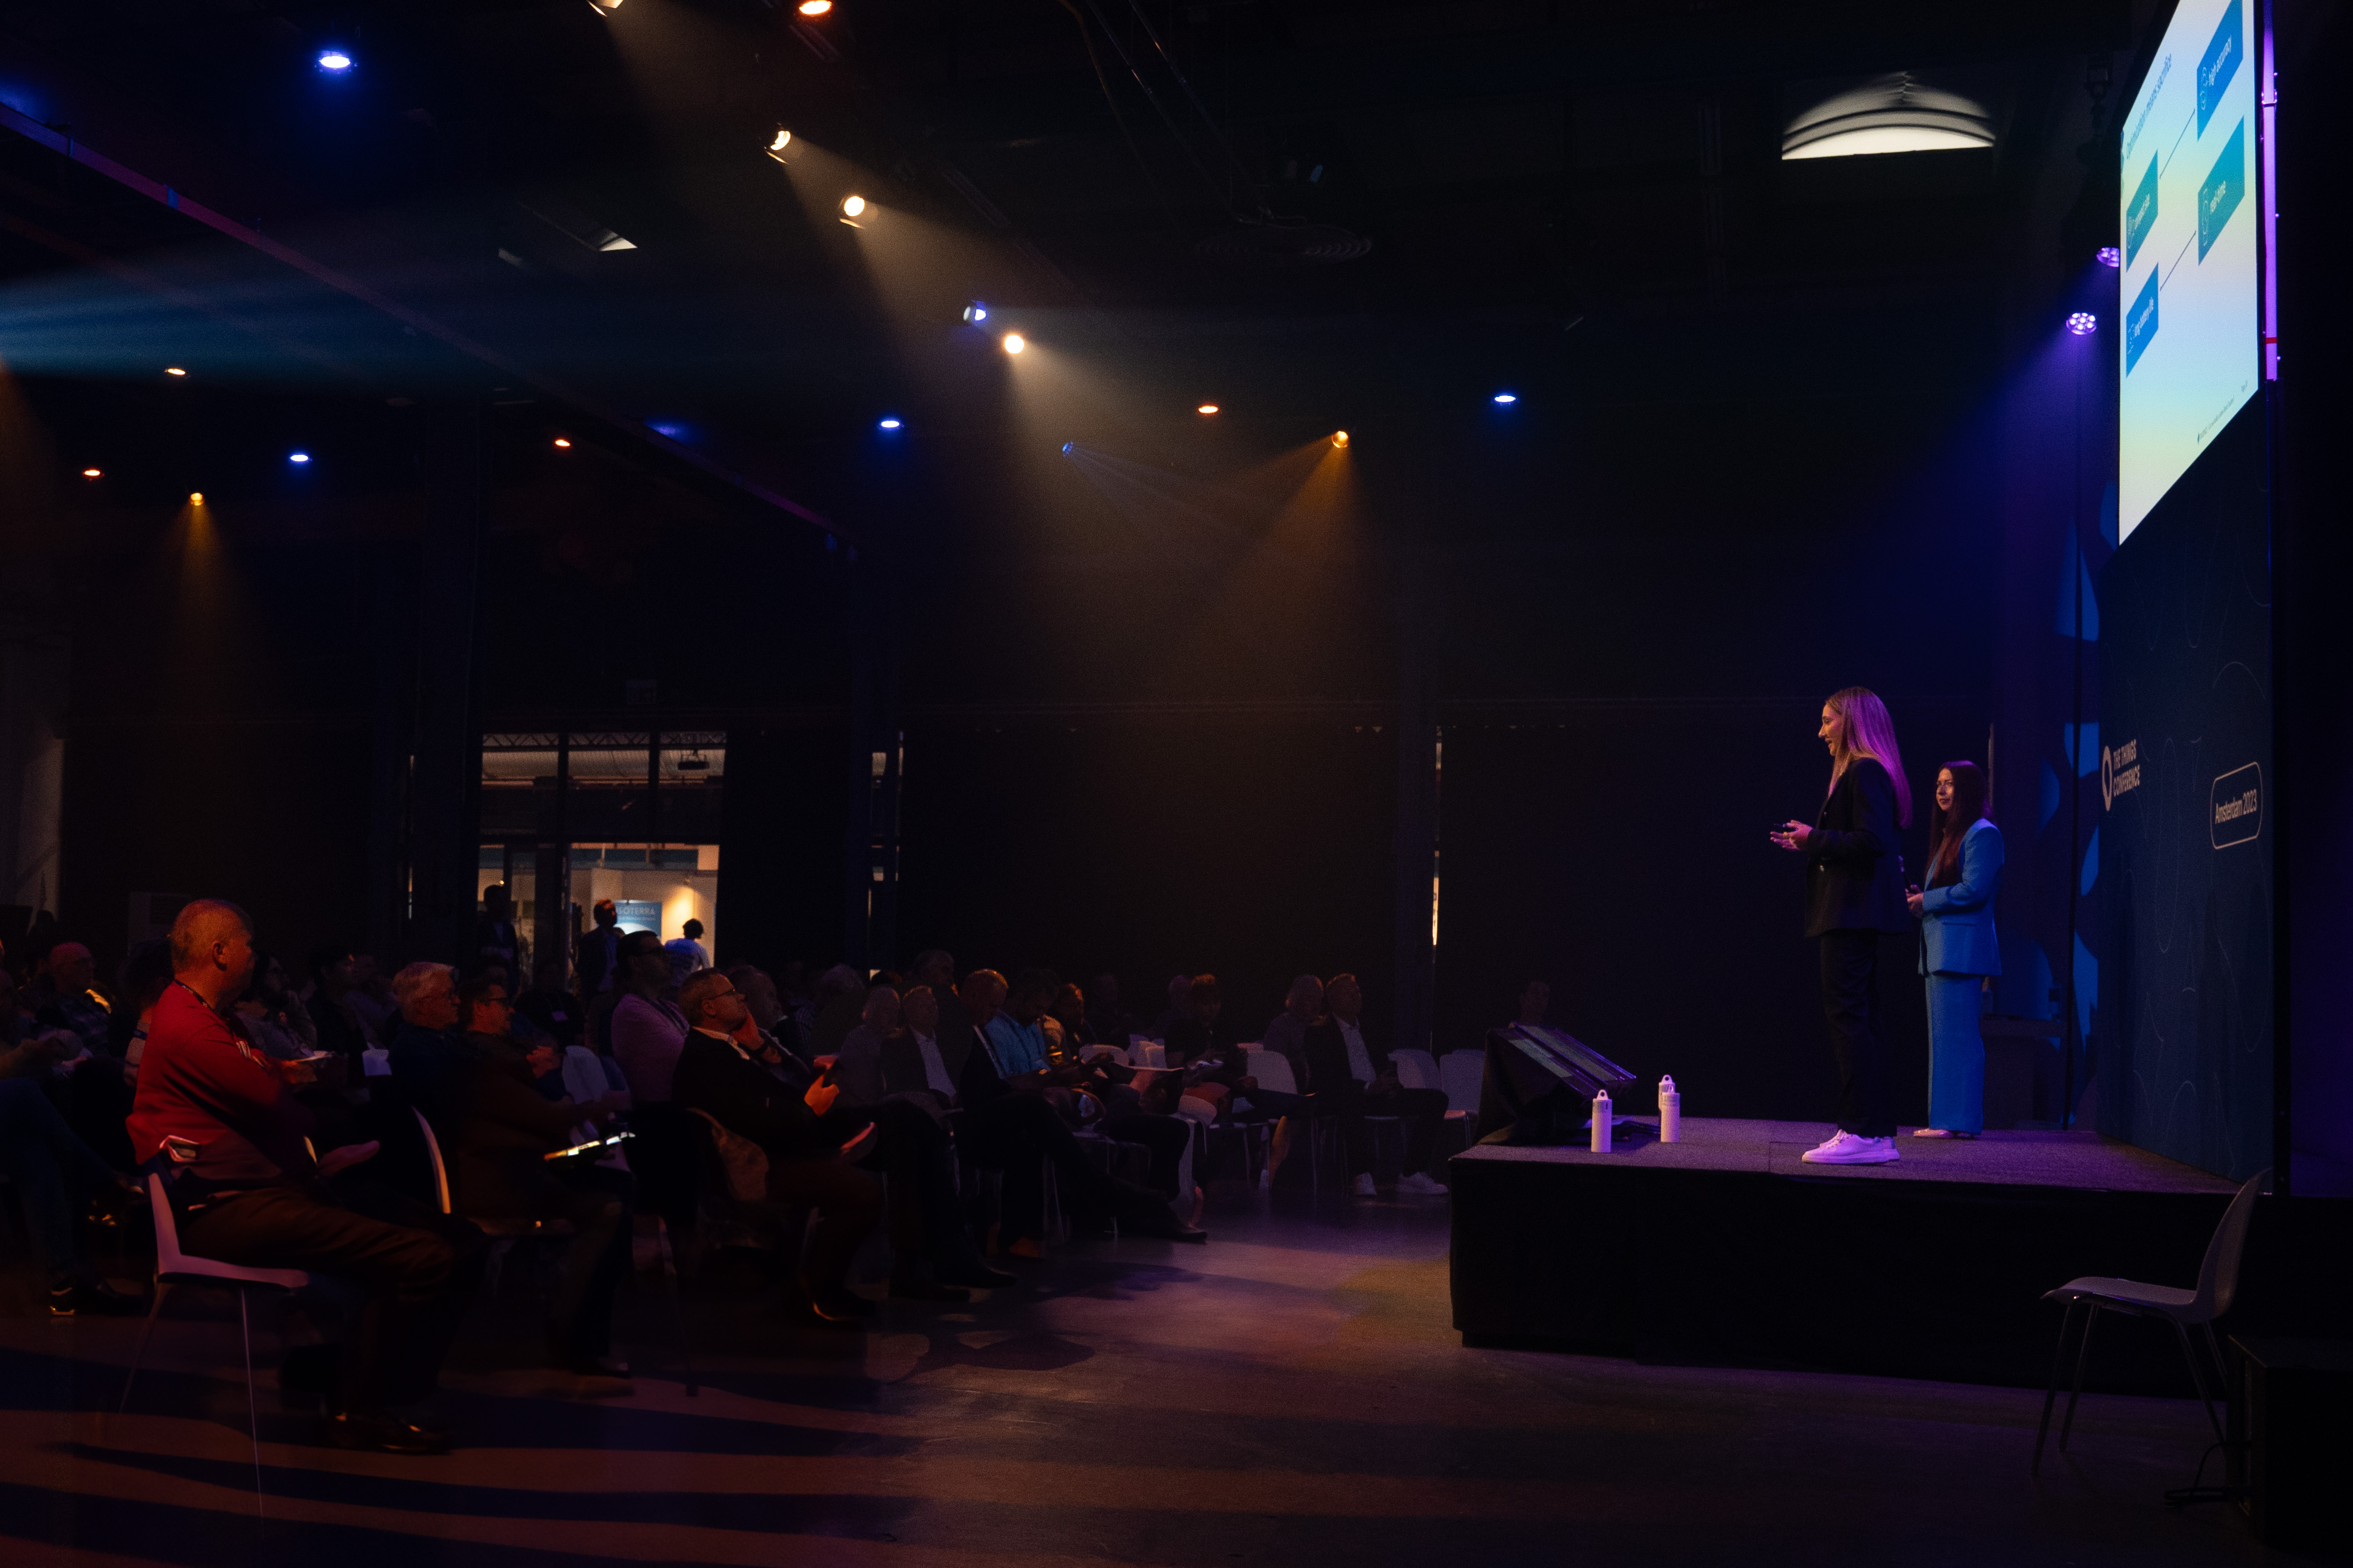 La directora general Chiara Koopmans presenta Truvami en el escenario de la Things Conference en Ámsterdam (Foto: Business Wire)